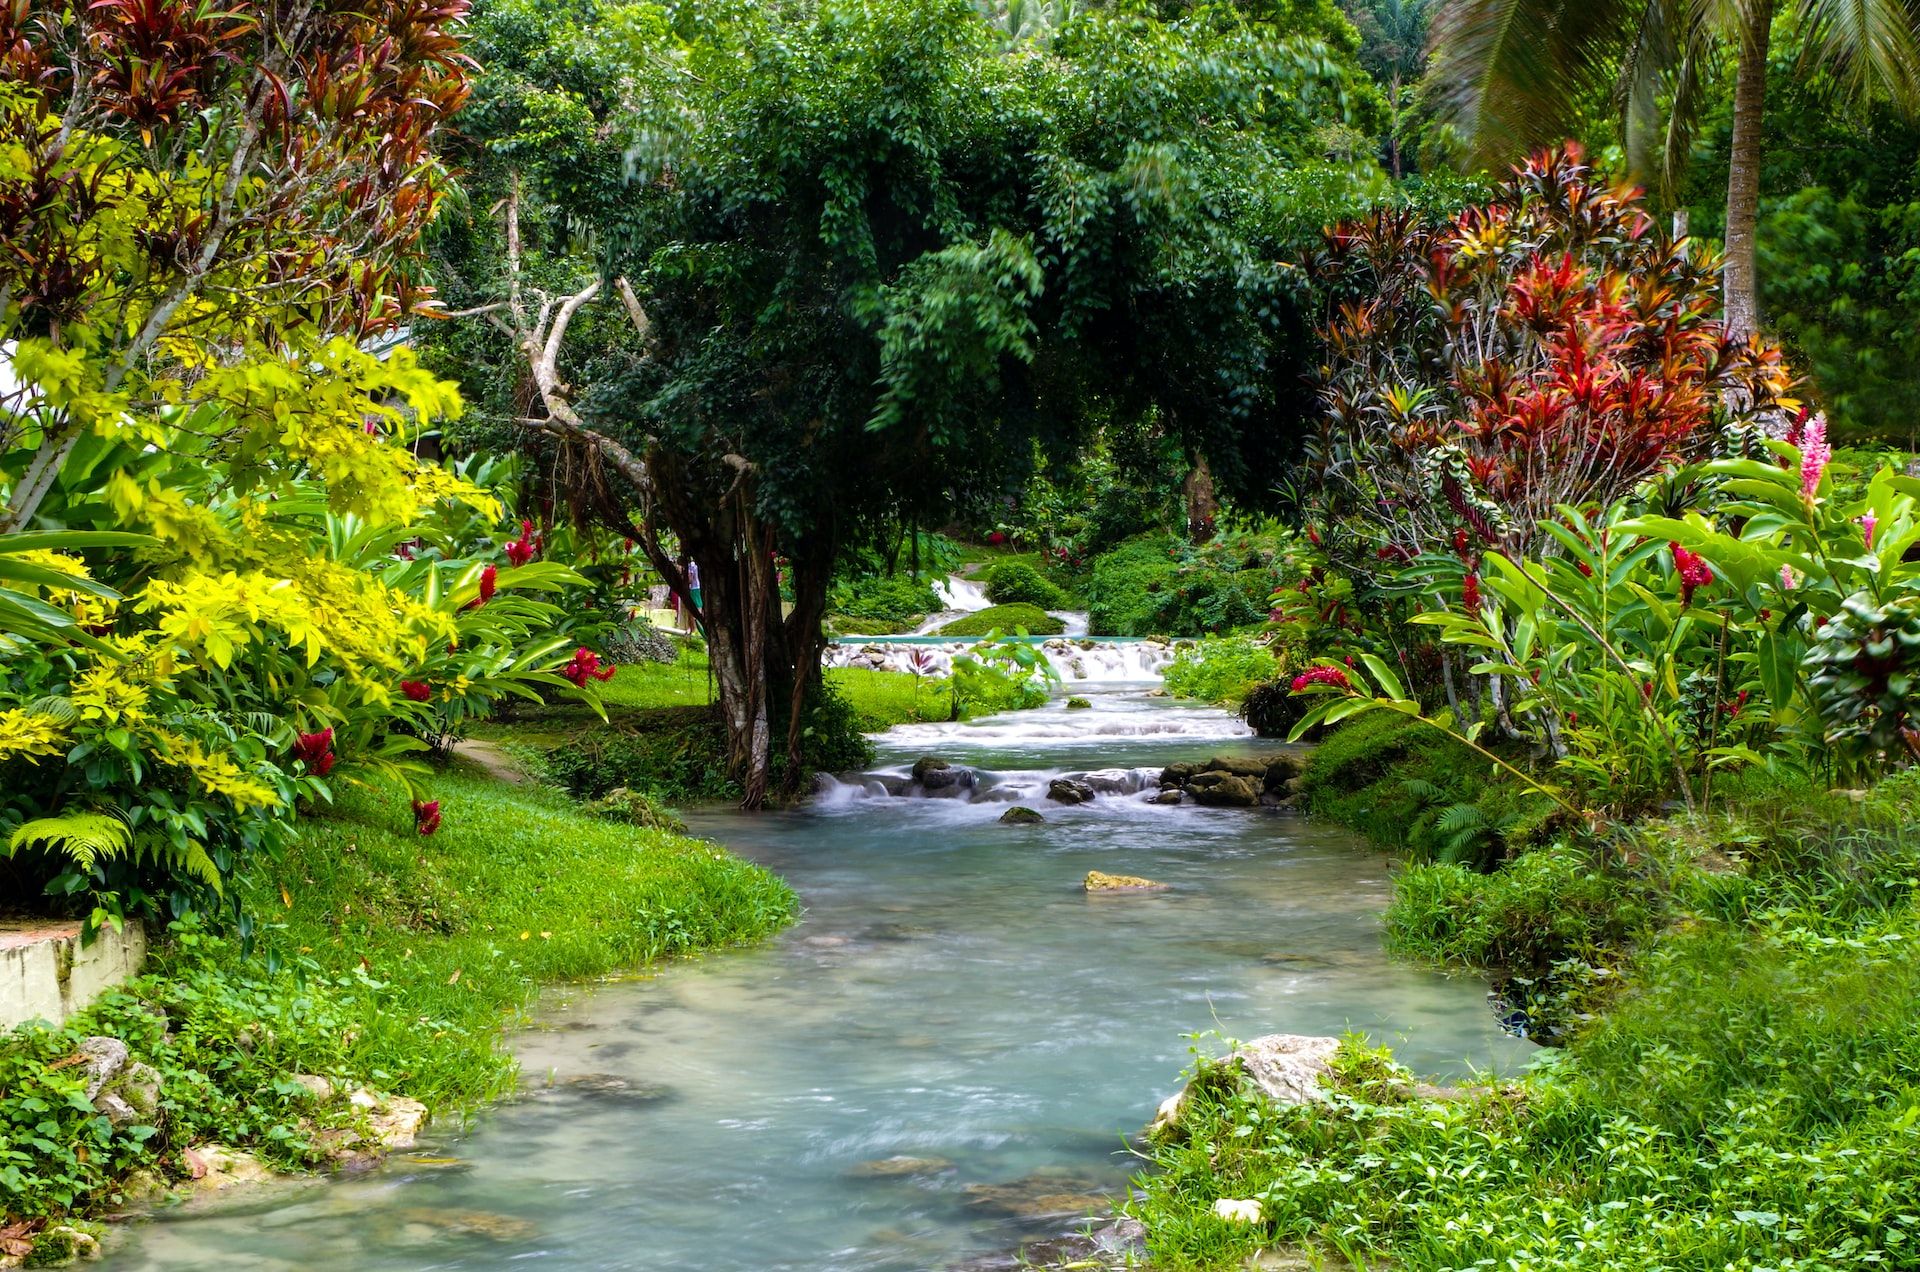 Stream flowing through tropical vegetation in Vanuatu